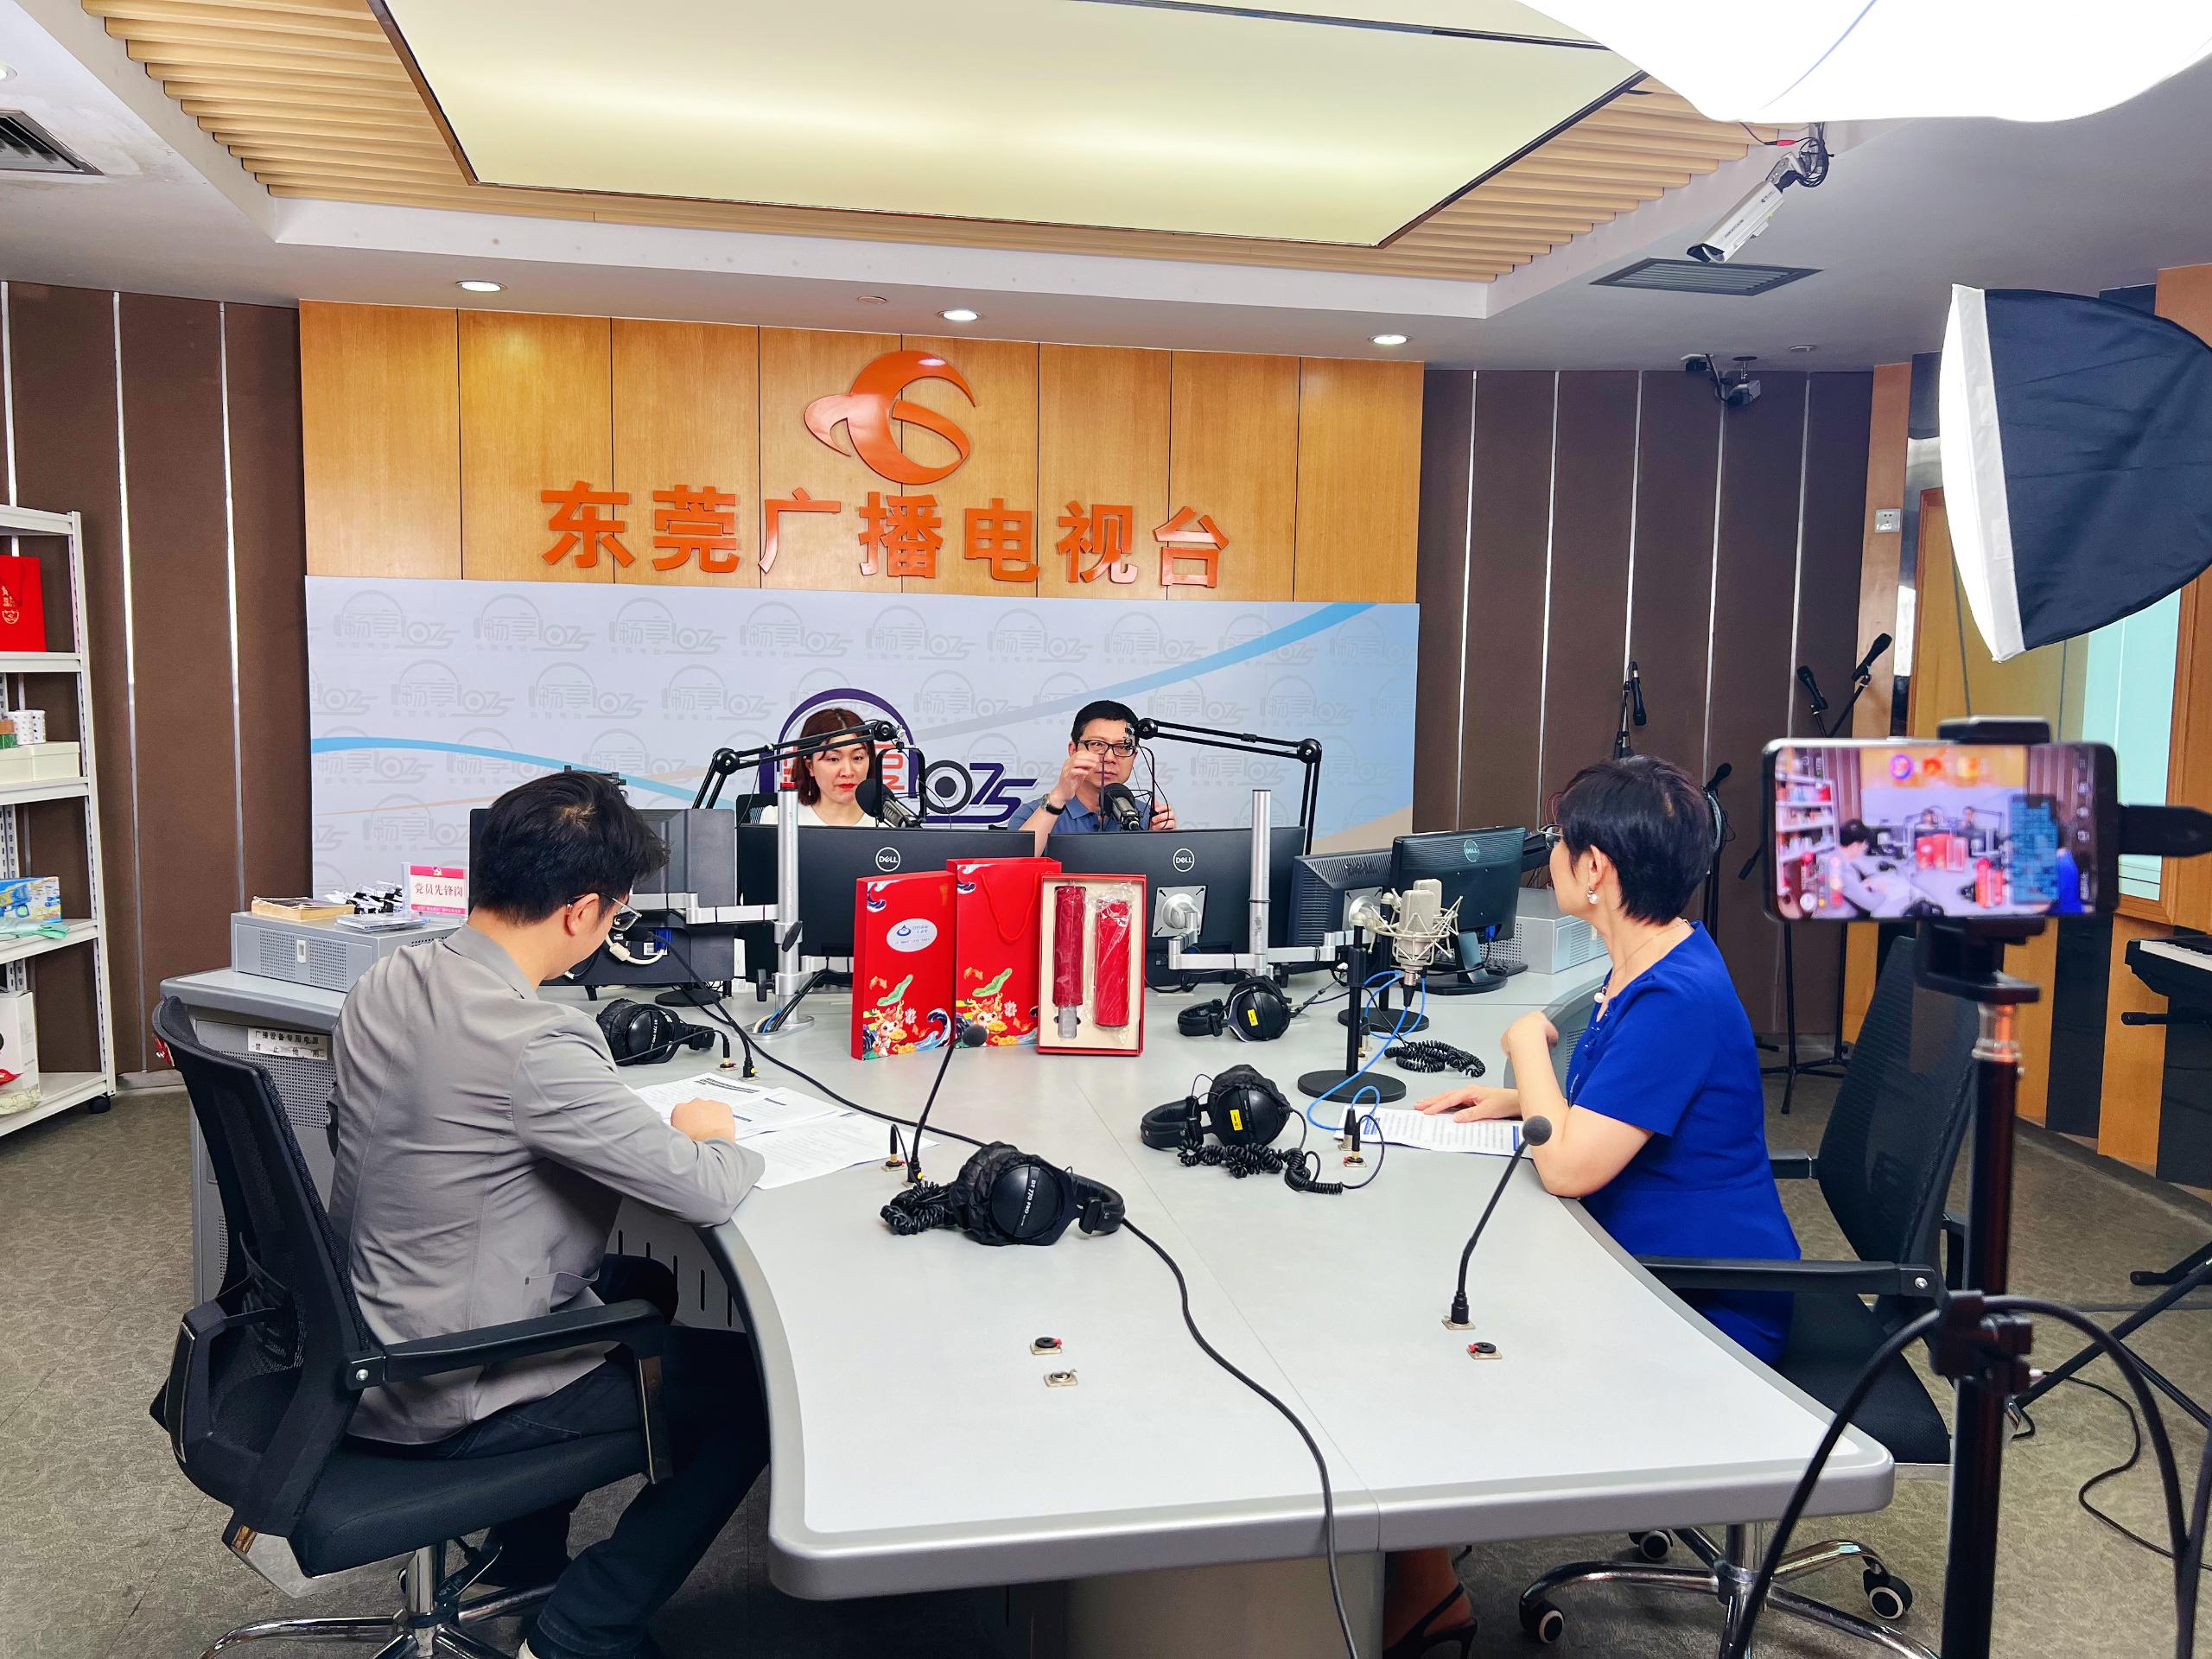 迪奥技术受邀参加东莞广播电视台交通广播FM107.5《名企在线》栏目